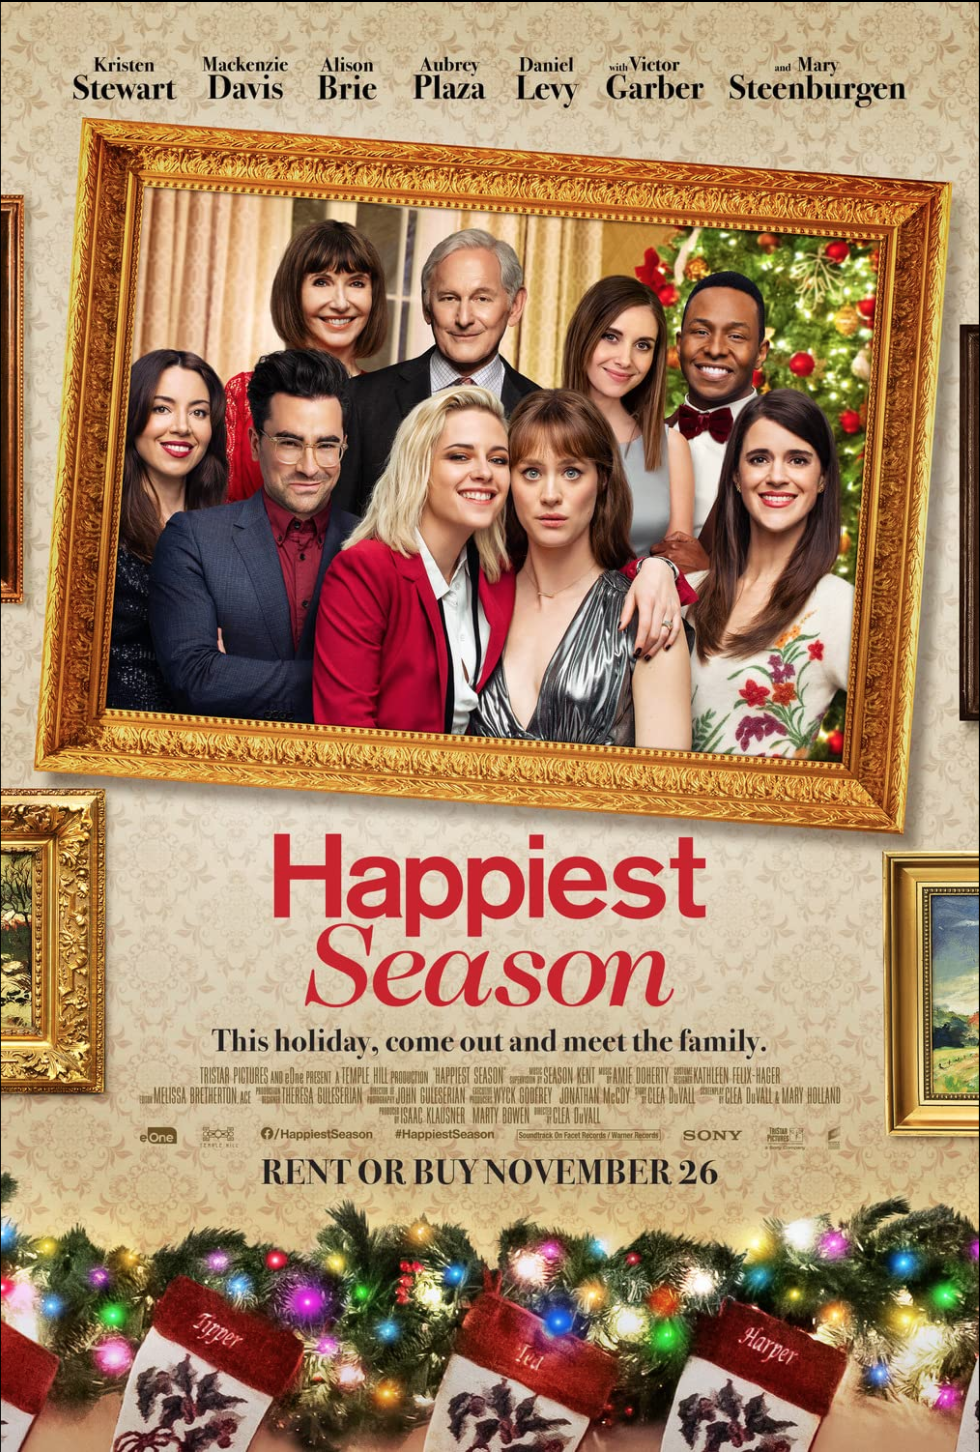 Happiest Season - Movie.png